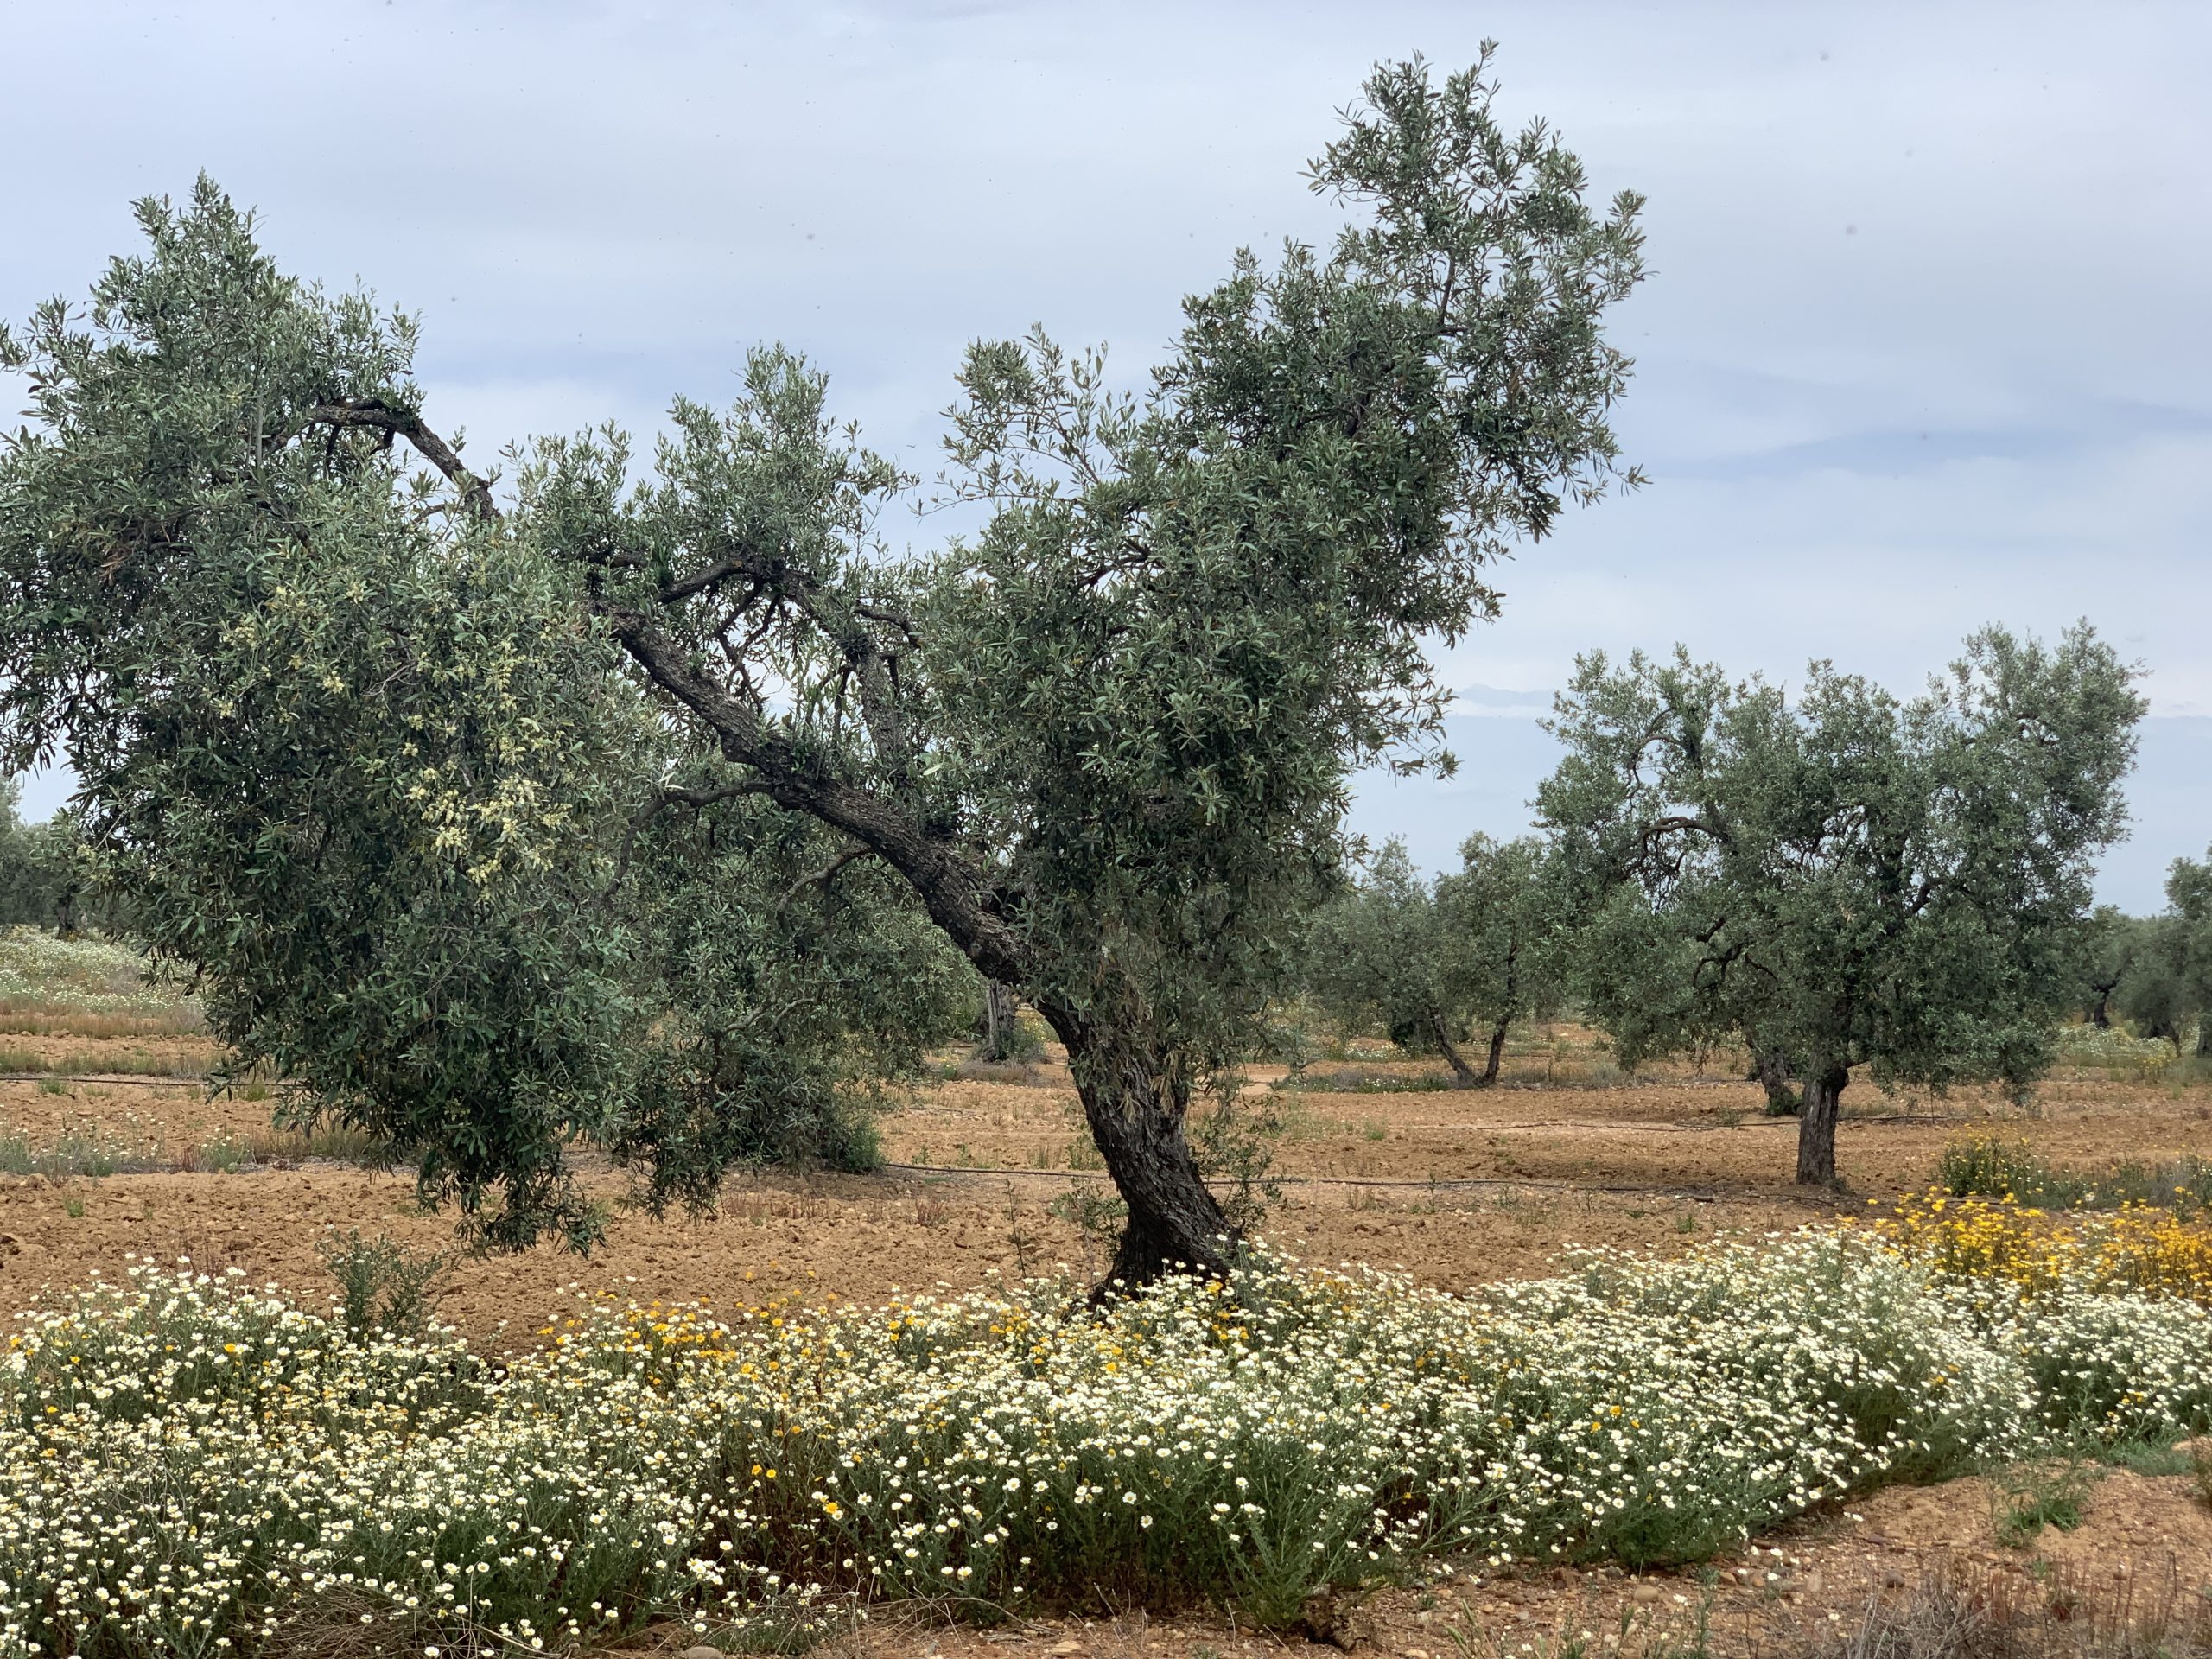 Cobertura vegetal en el cultivo del olivo